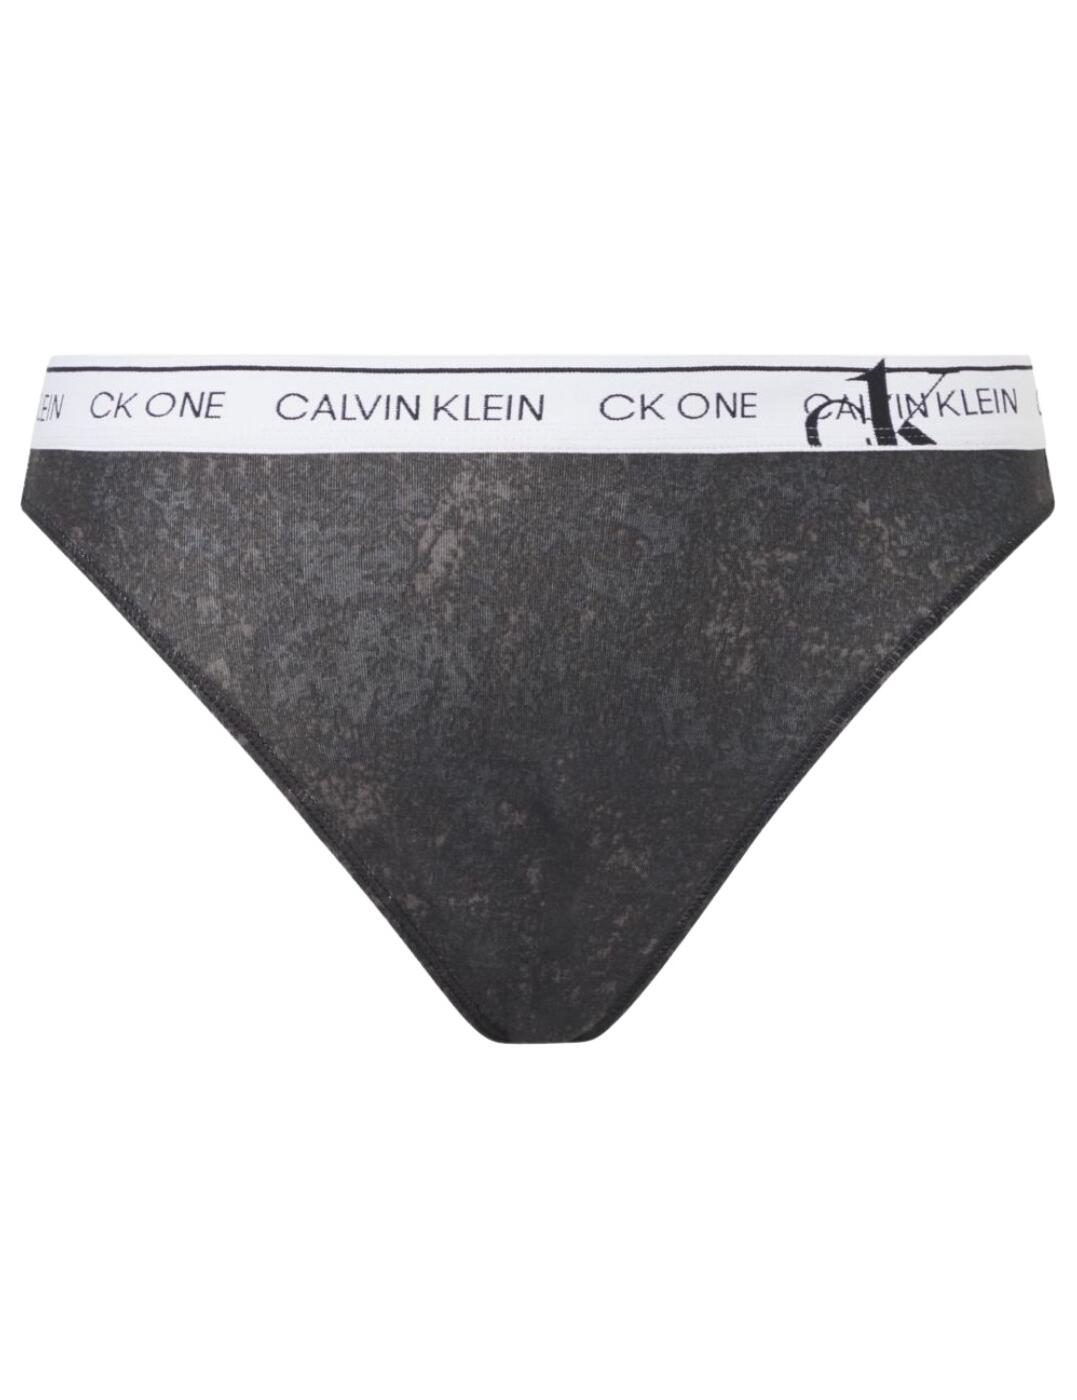 Calvin Klein thong knickers womens CK Briefs knickers high leg